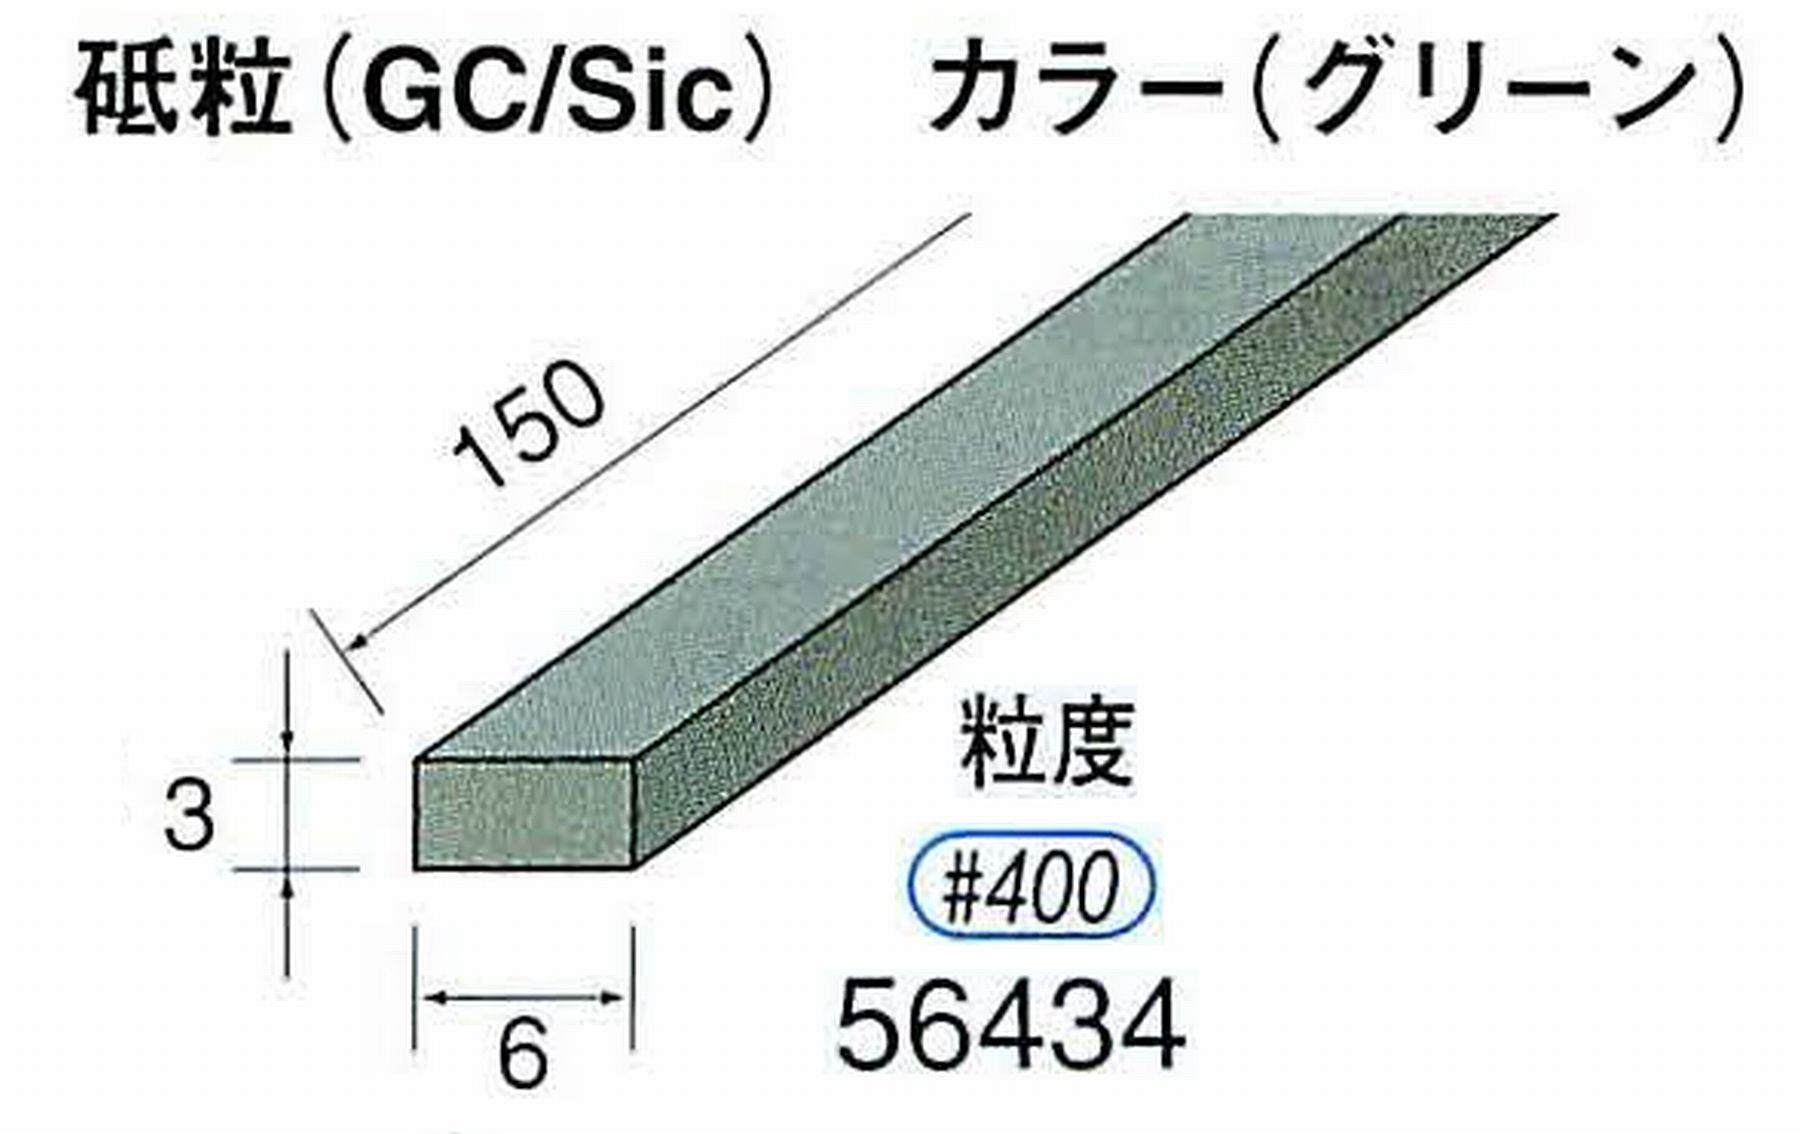 ナカニシ/NAKANISHI スティック砥石 グリーン・フィニッシュシリーズ 砥粒(GC/Sic) 56434